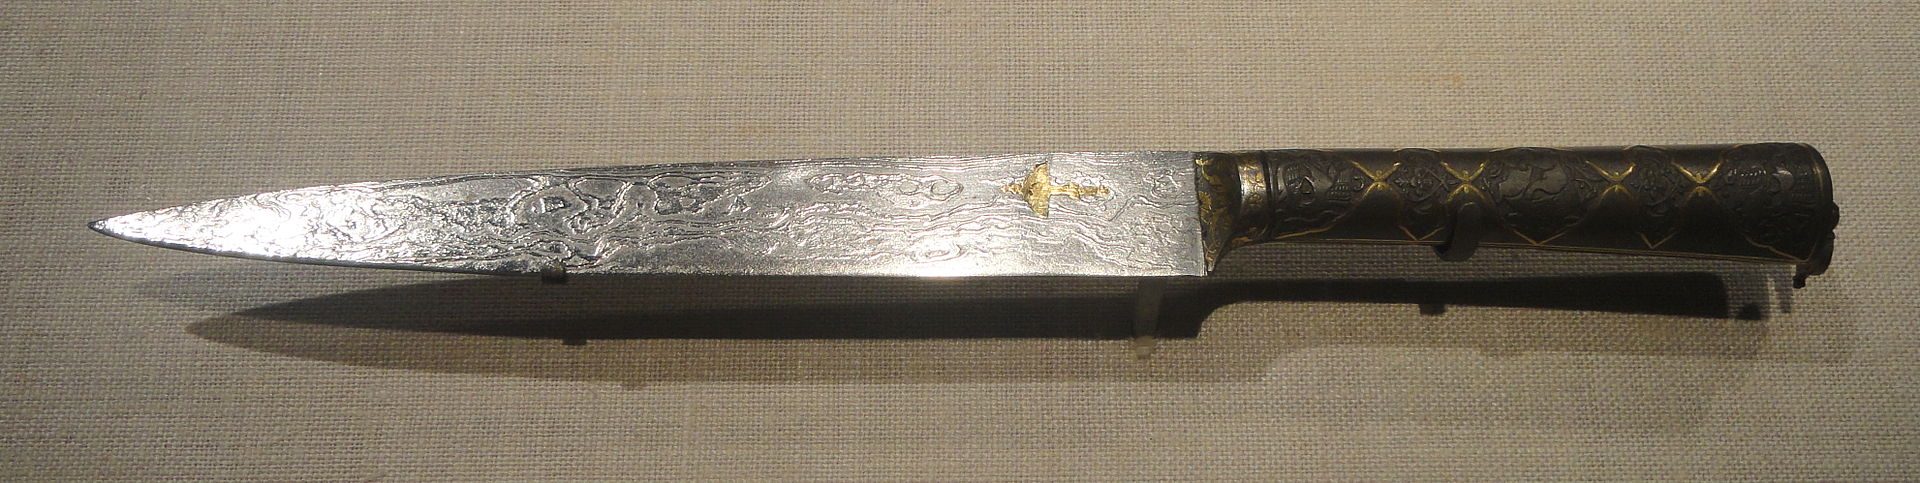 Метеоритный железный кинжал императора Джахангира, династия Моголов, 1621, Индия, стальной клинок с метеорным железом, железной рукоятью и золотой инкрустацией - Свободная Галерея искусства